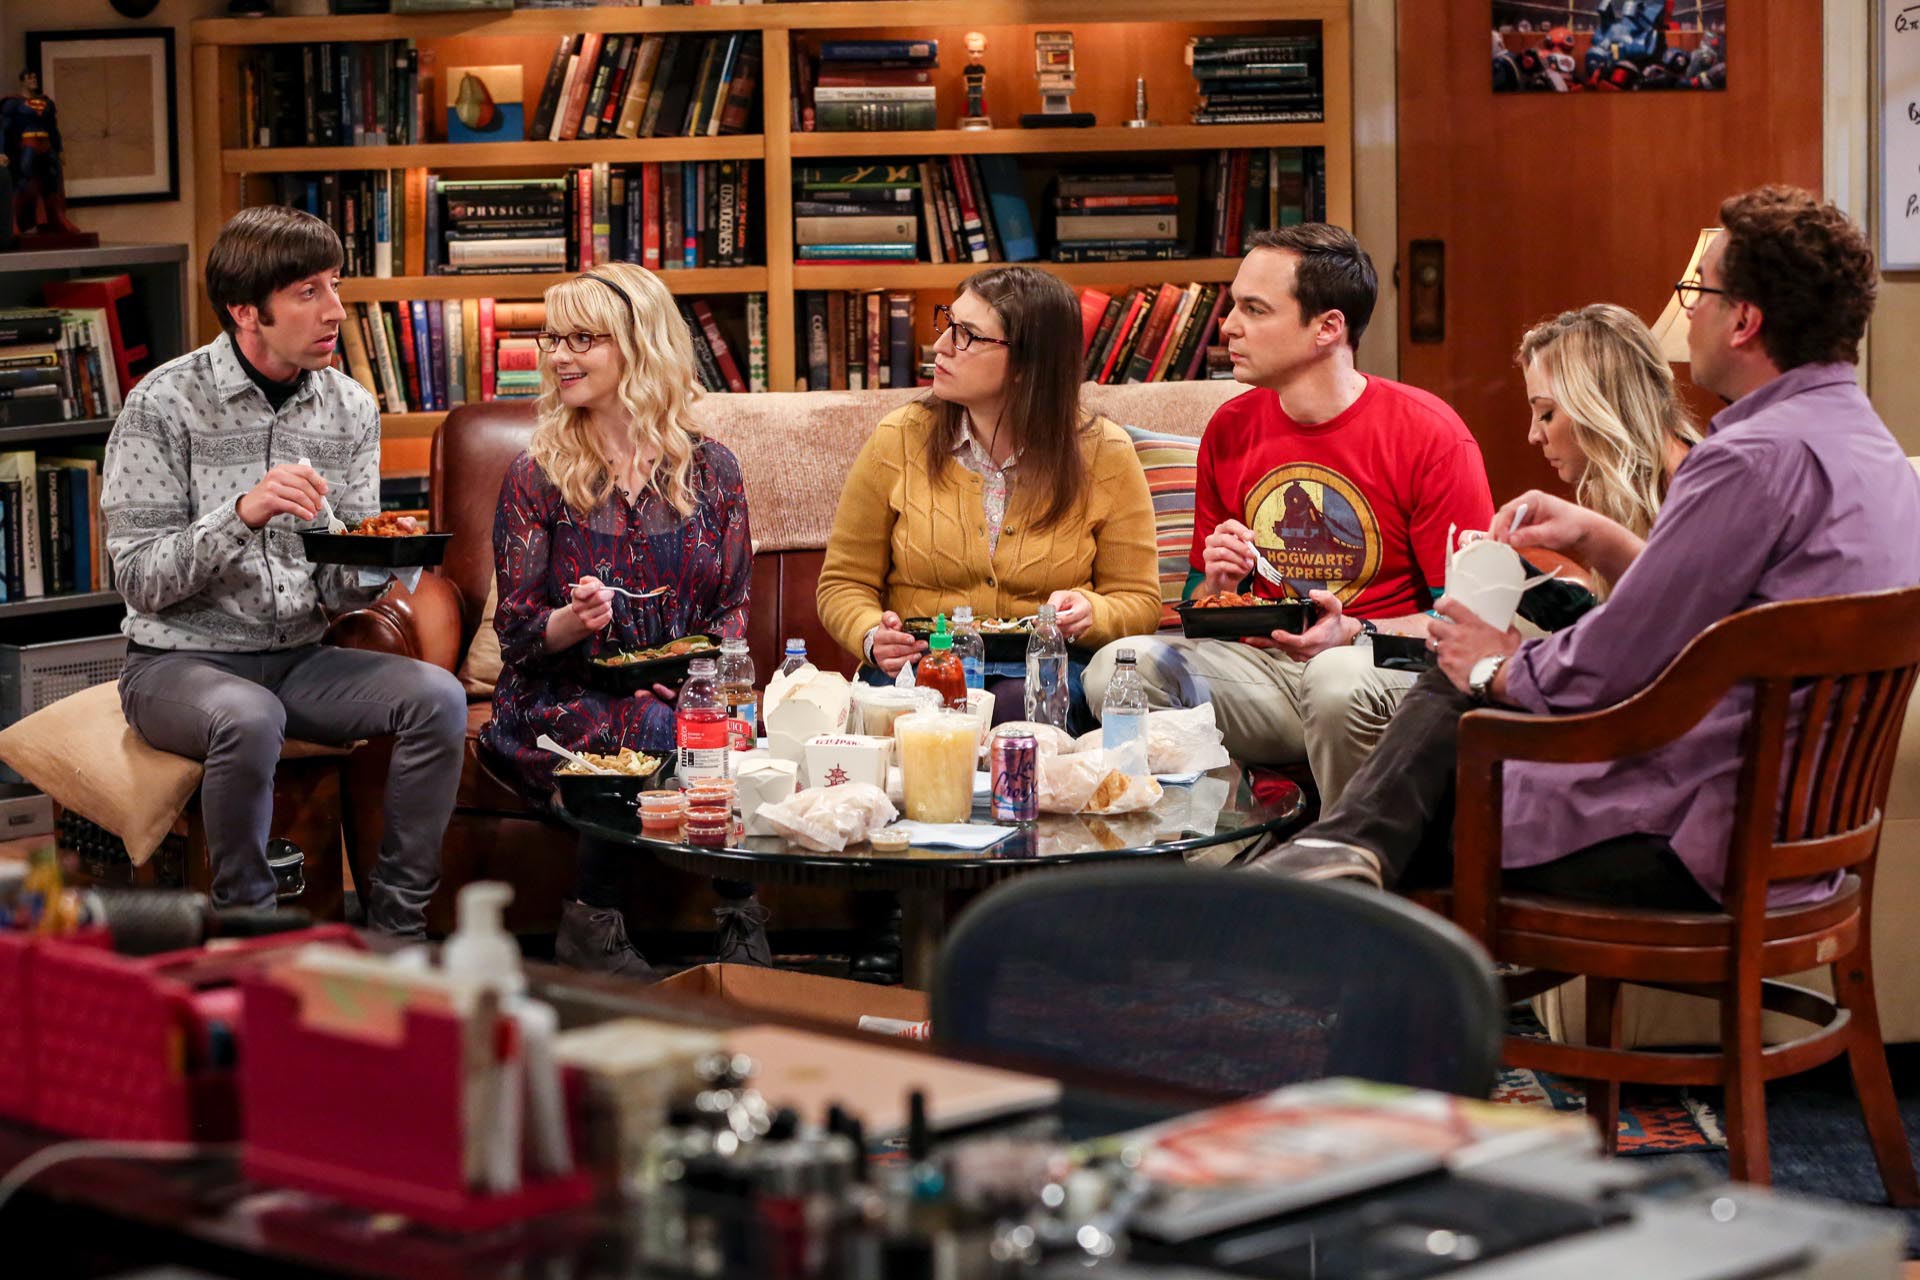 Presentaron acciones legales para quitar un episodio de “The Big Bang Theory” de plataformas